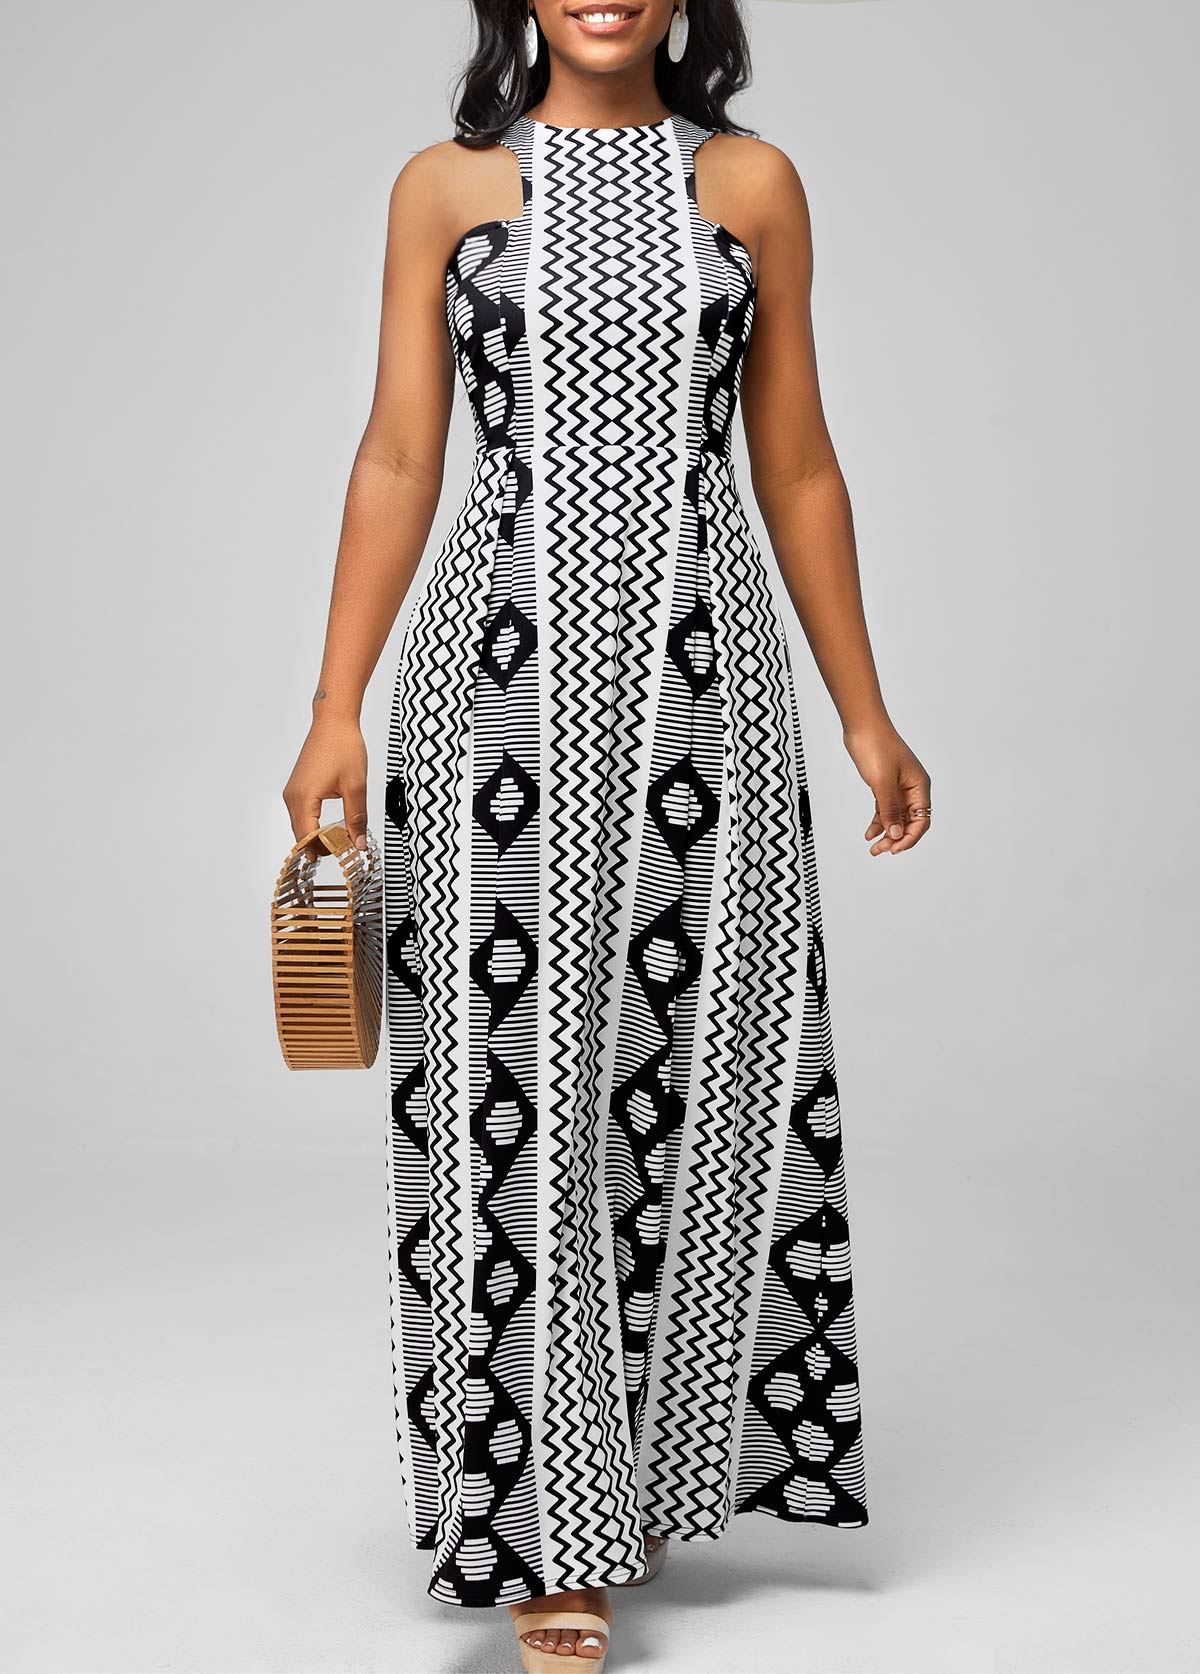 ROTITA Black Bib Neck Geometric Print Dress